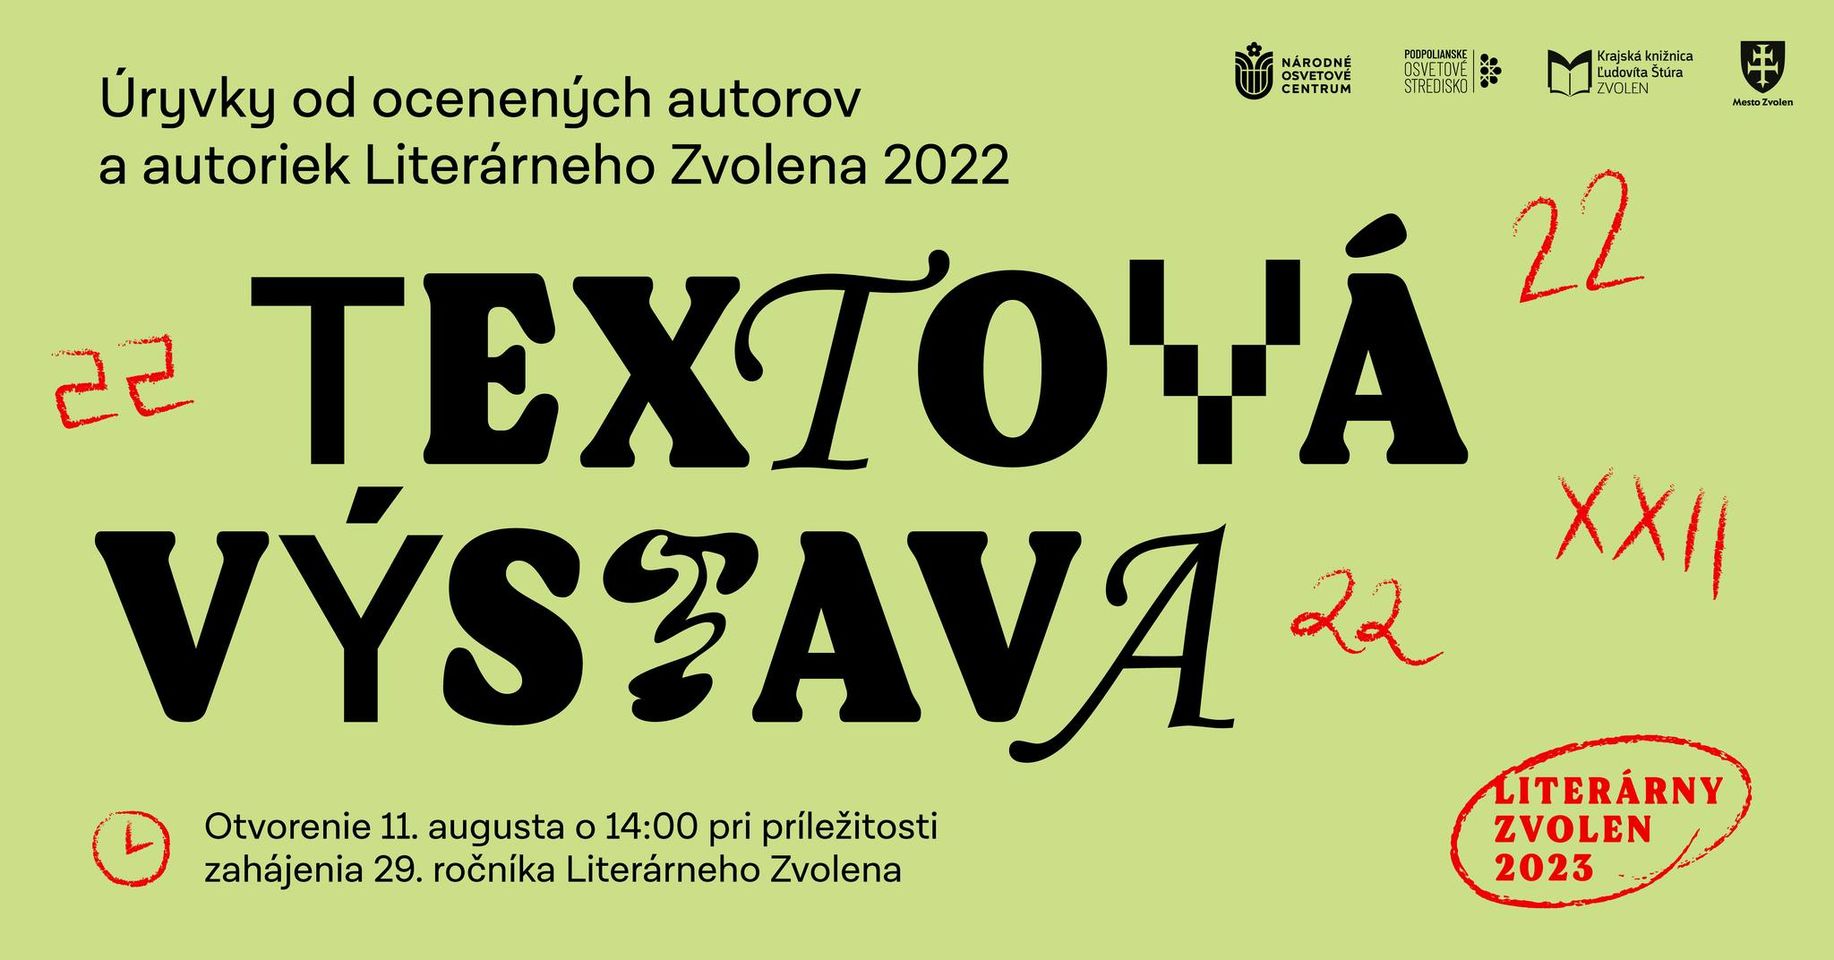 Literárny Zvolen 2023 | Textová výstava - úryvky od ocenených autorov a autoriek